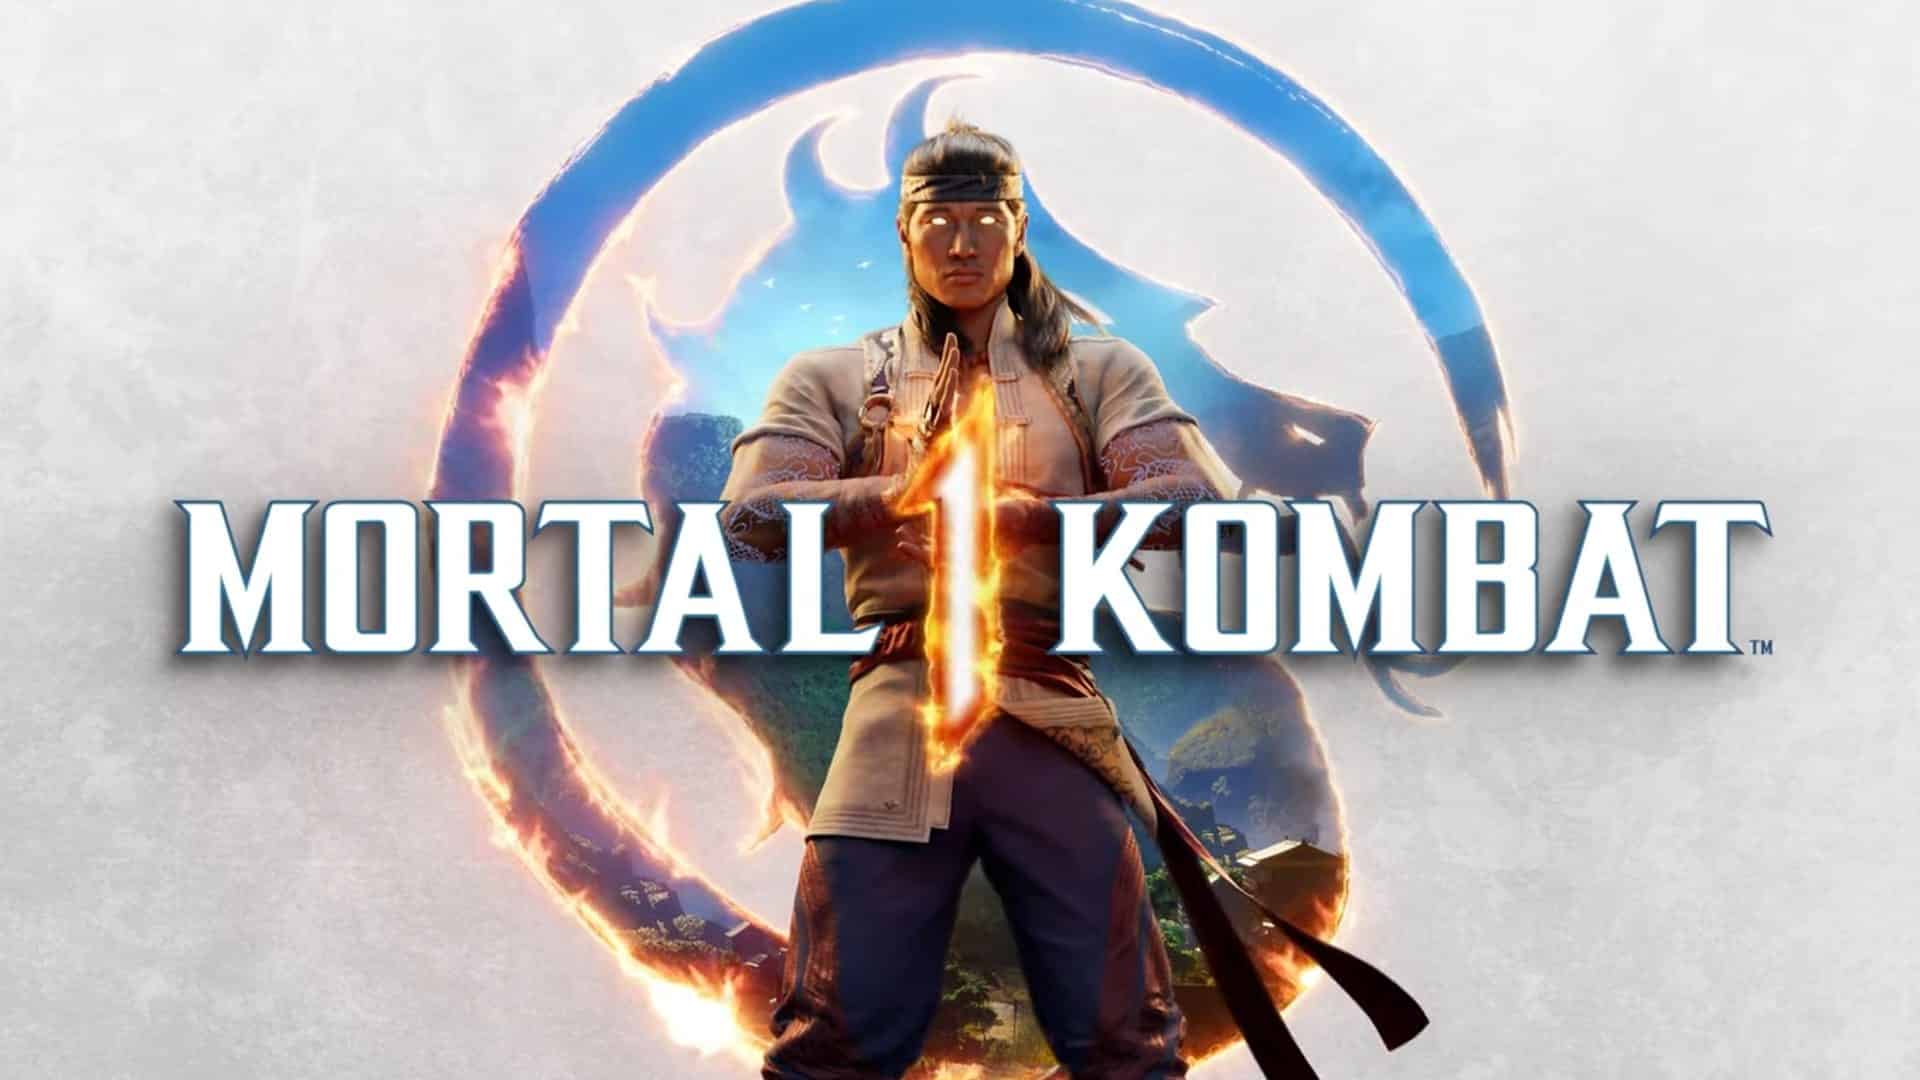 Mortal-Kombat-1-capa-oficial.jpg